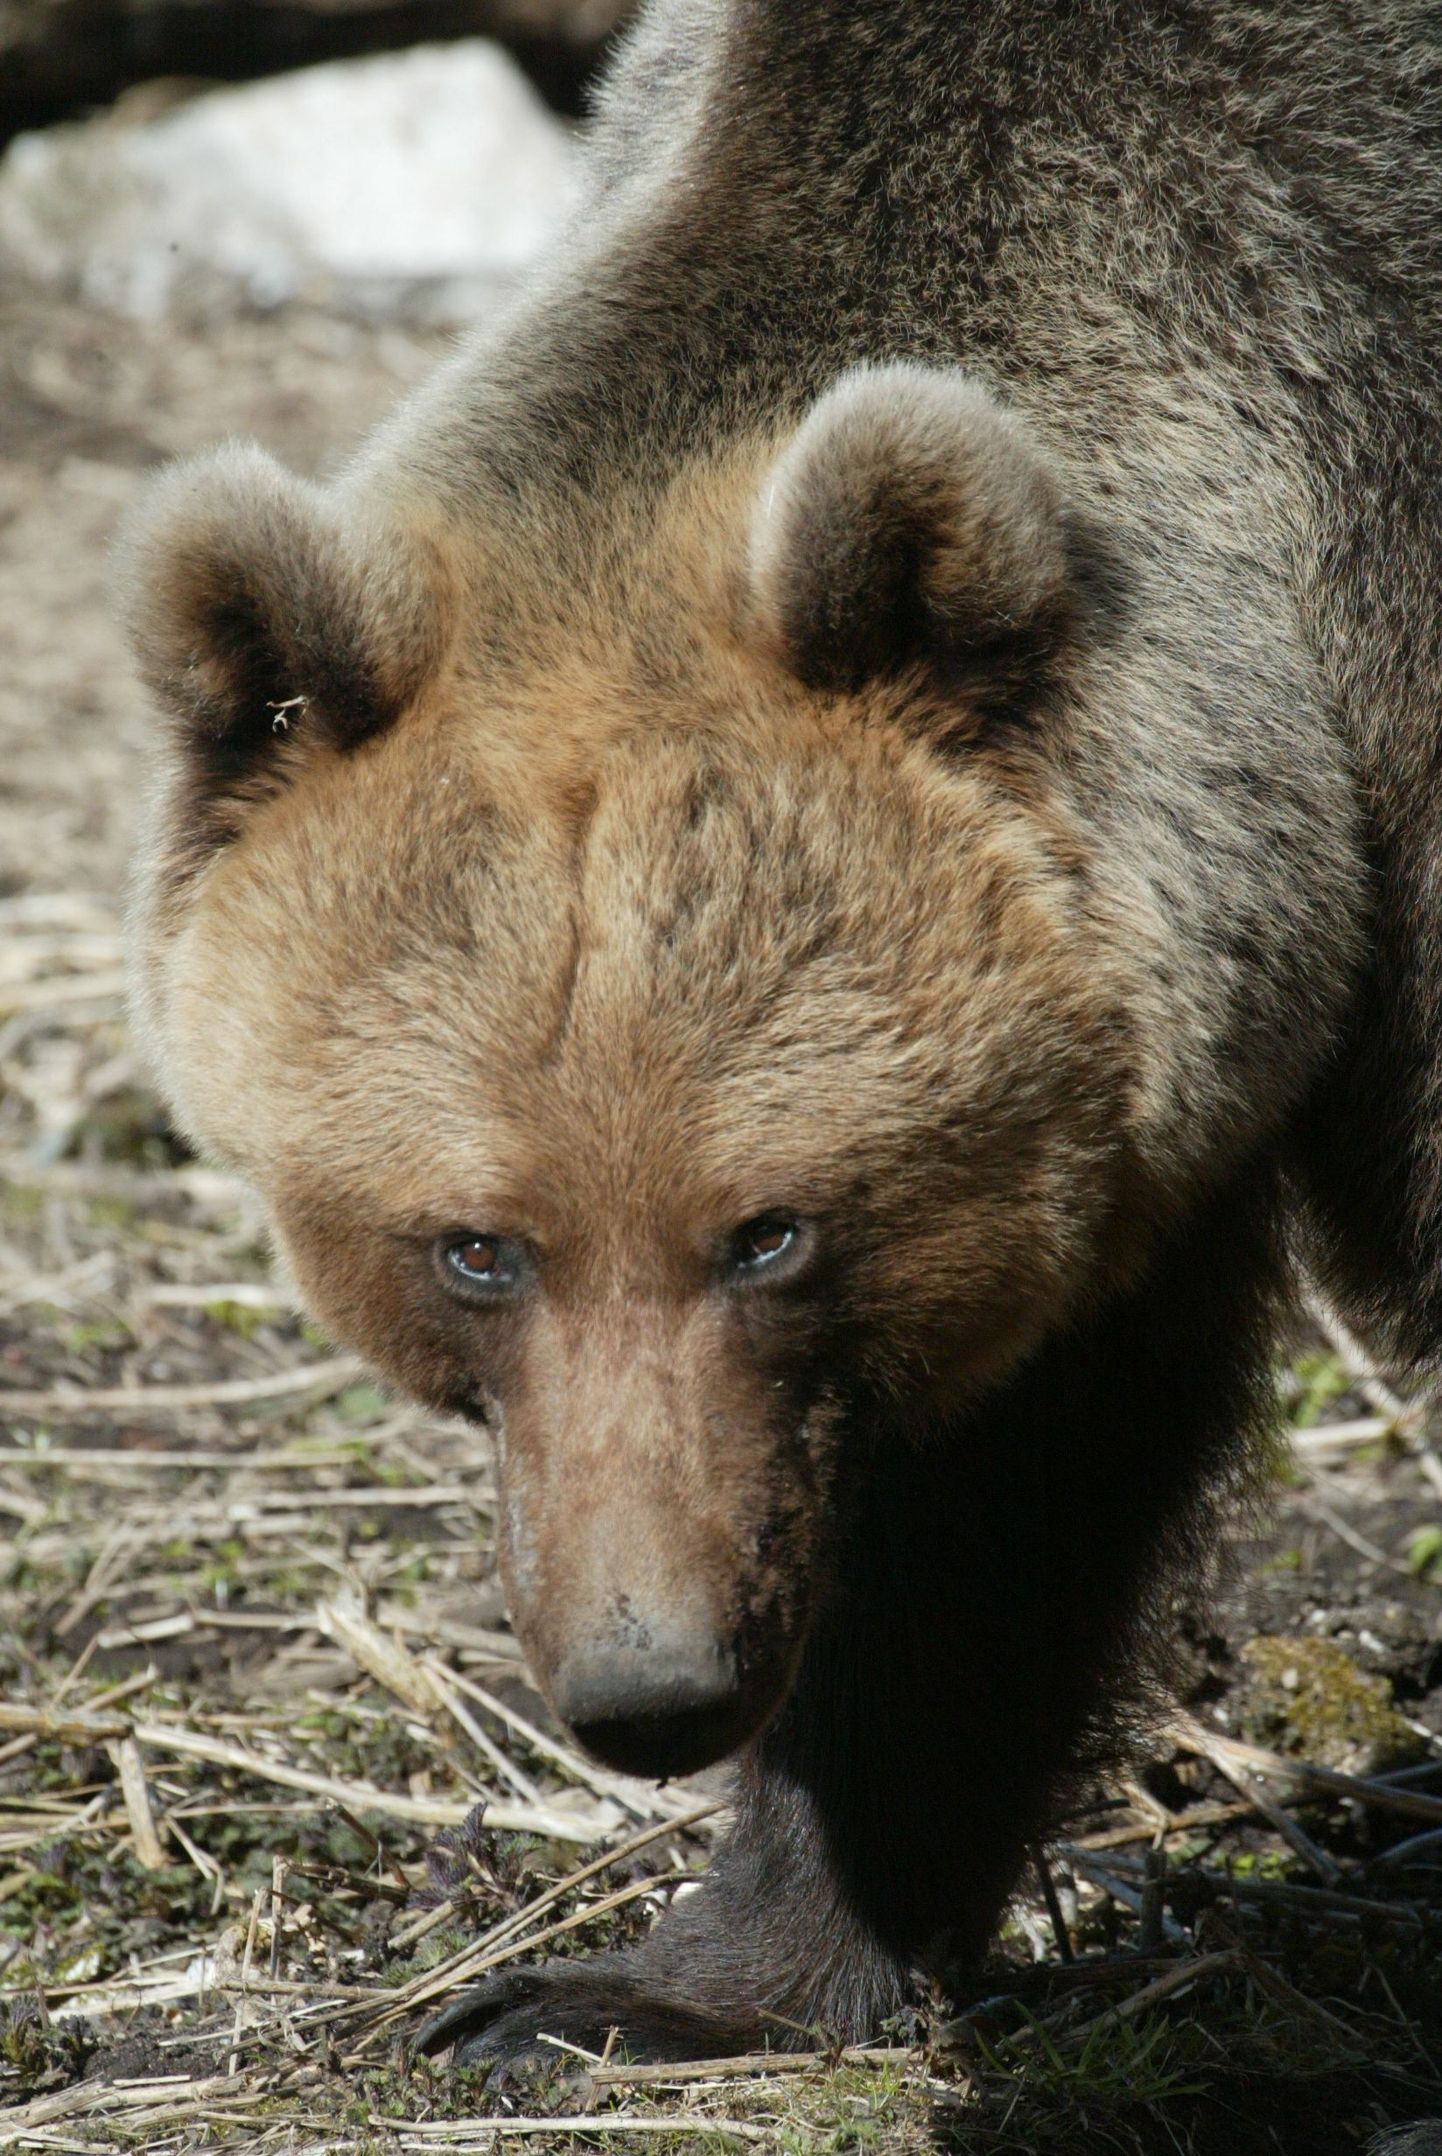 Pildil olev karu elab Elistvere loomapargis.